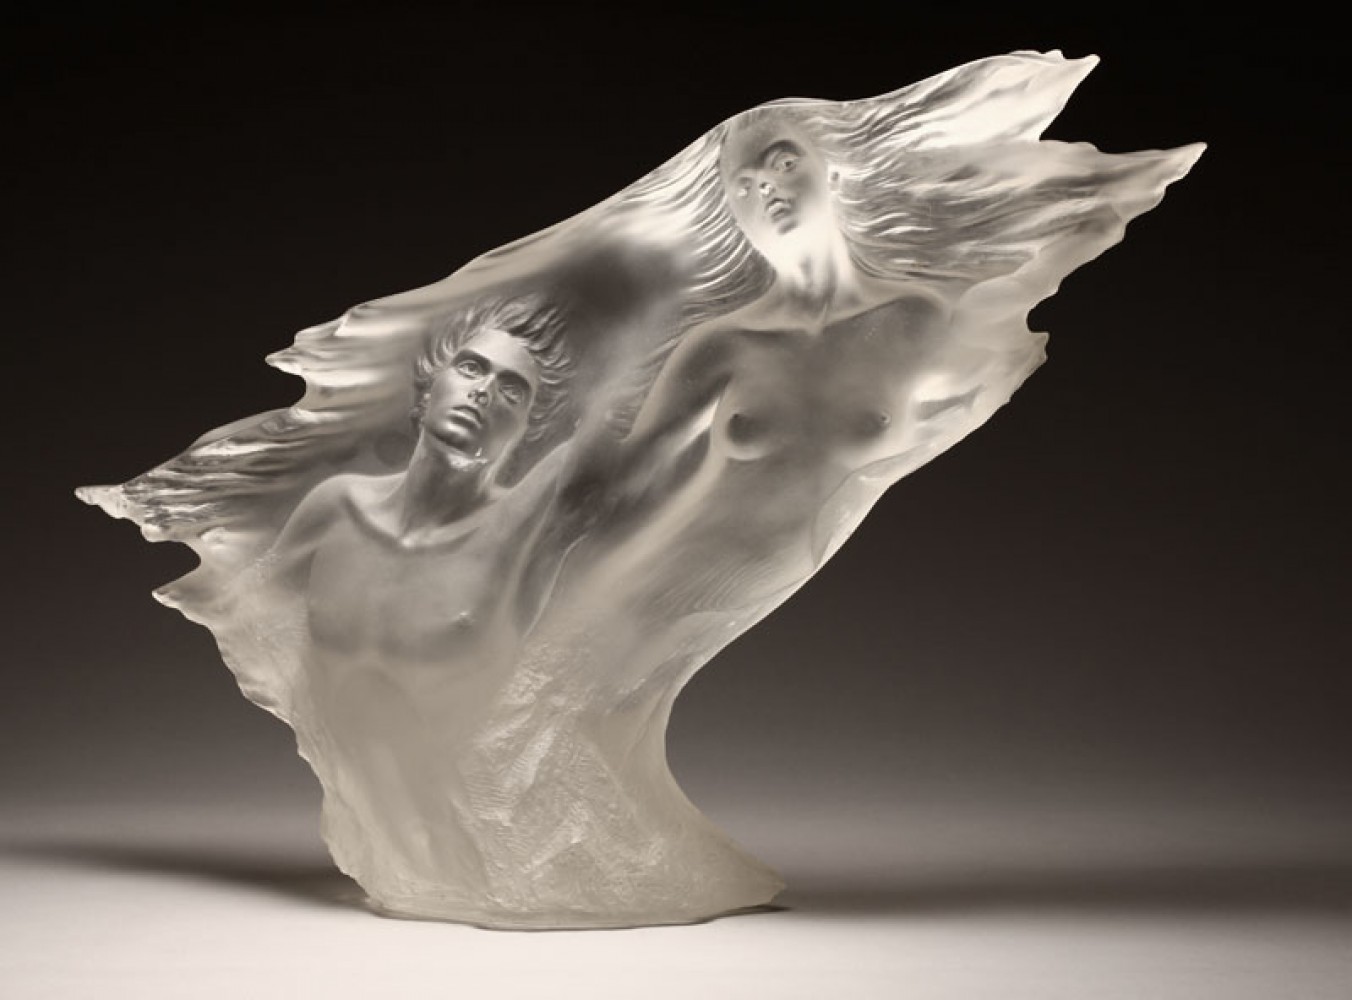 Résultat de recherche d'images pour "michael wilkinson acrylic sculpture"